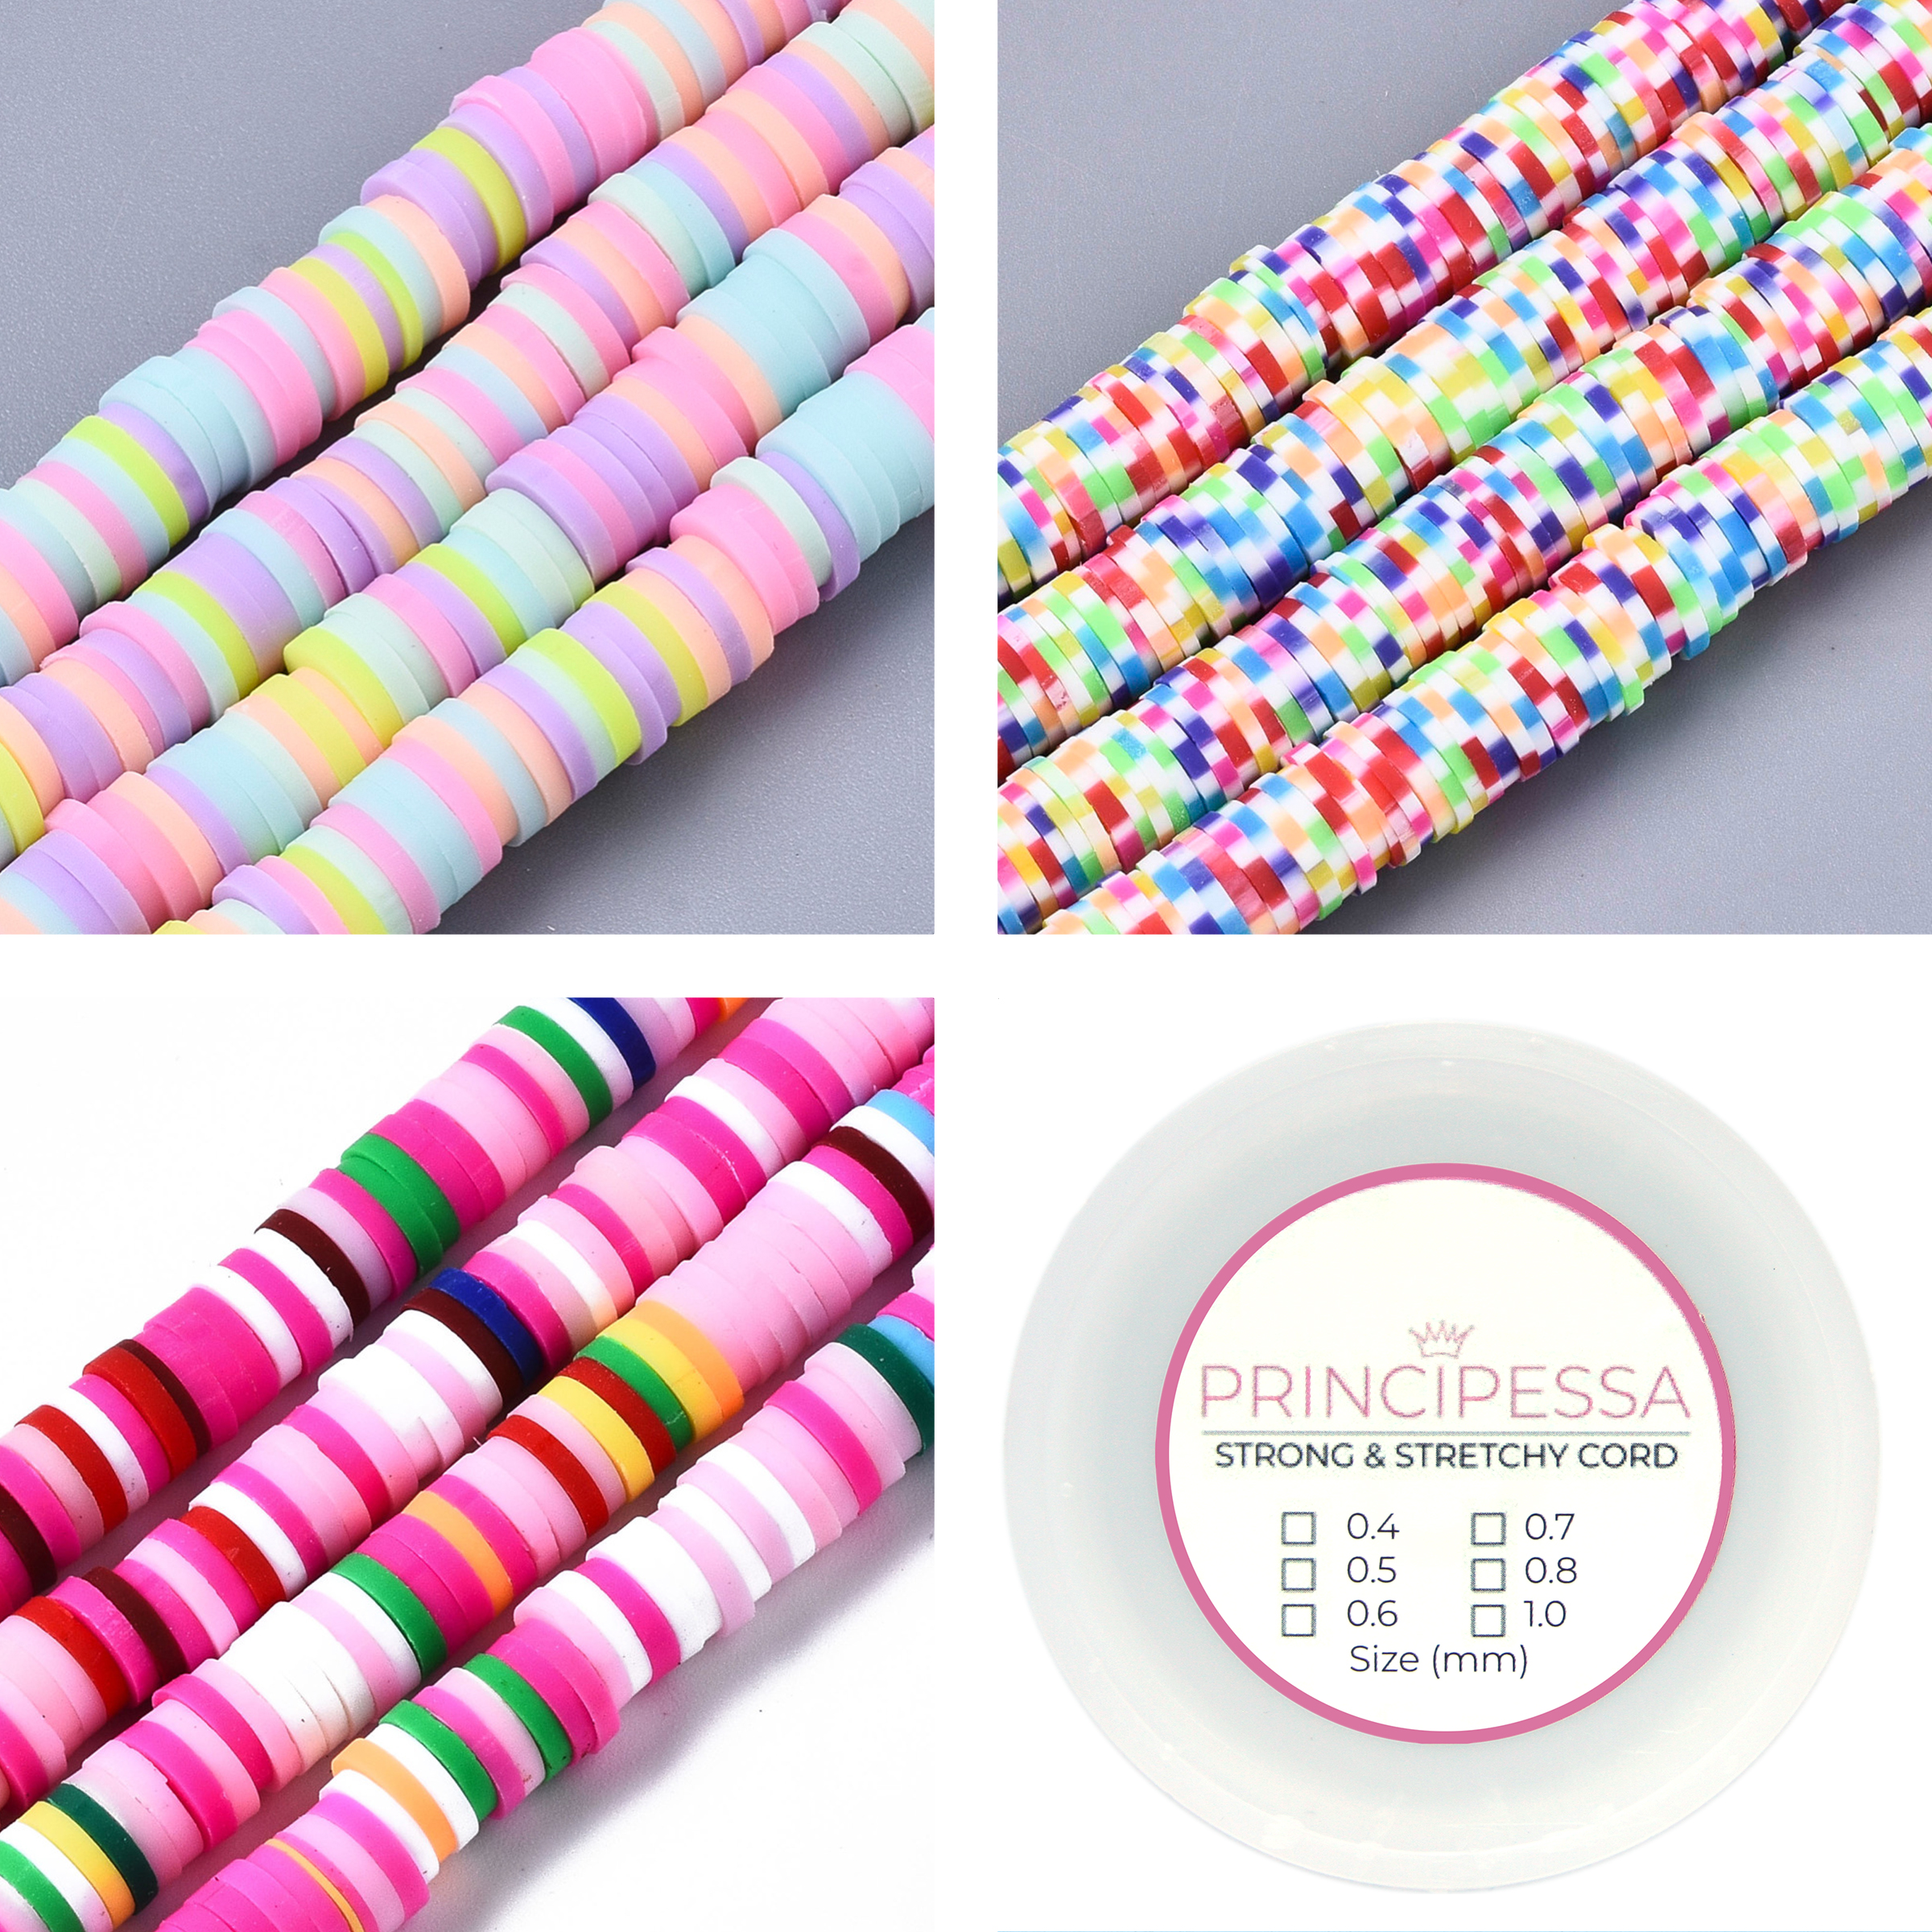 Principessa Katsuki kralen met rol elastiek – Pastel-mix, Casino-mix en Roze-mix – 1.150 kralen – Polymeer klei – 6mm kralen